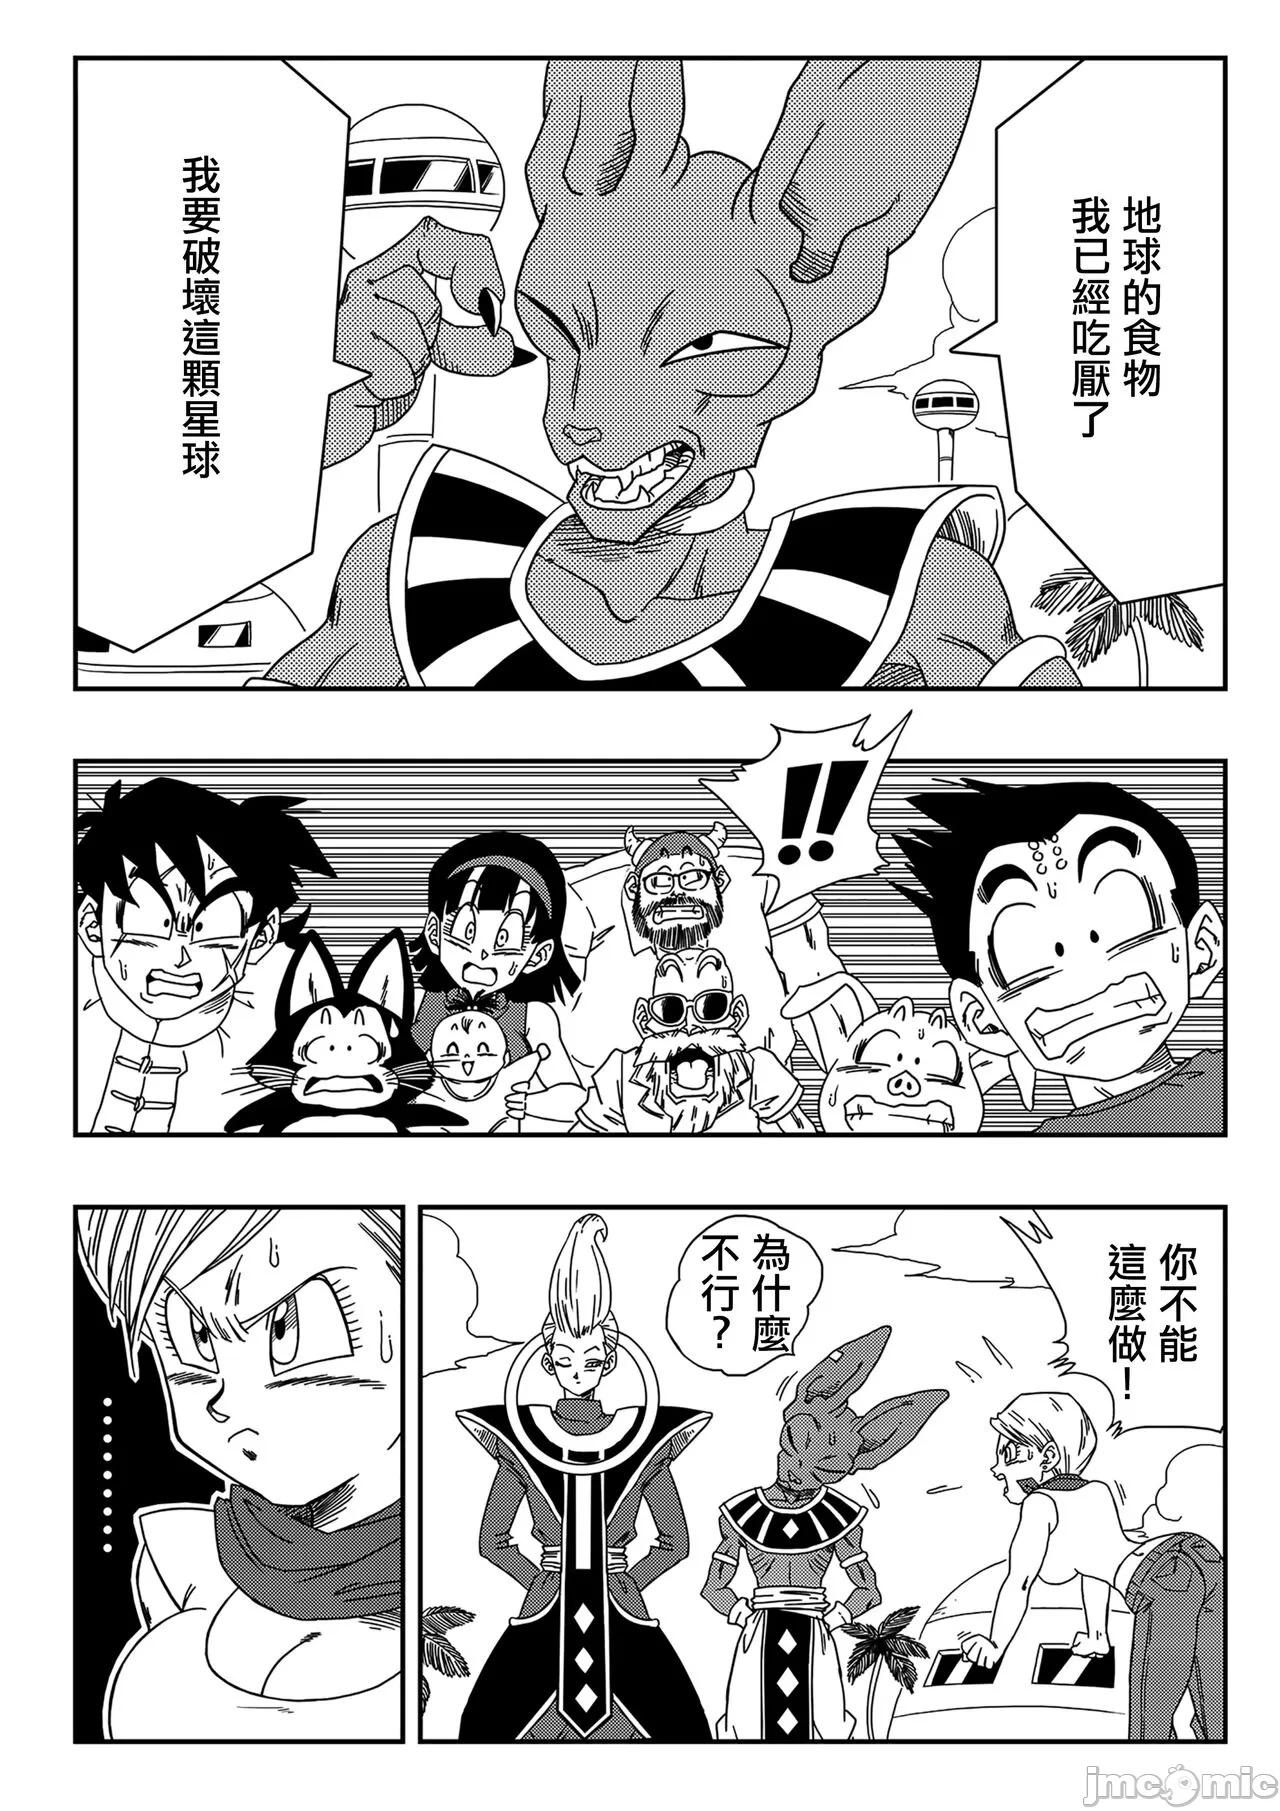 Blowjob Bulma ga Chikyuu o Sukuu! - Dragon ball super Staxxx - Page 3